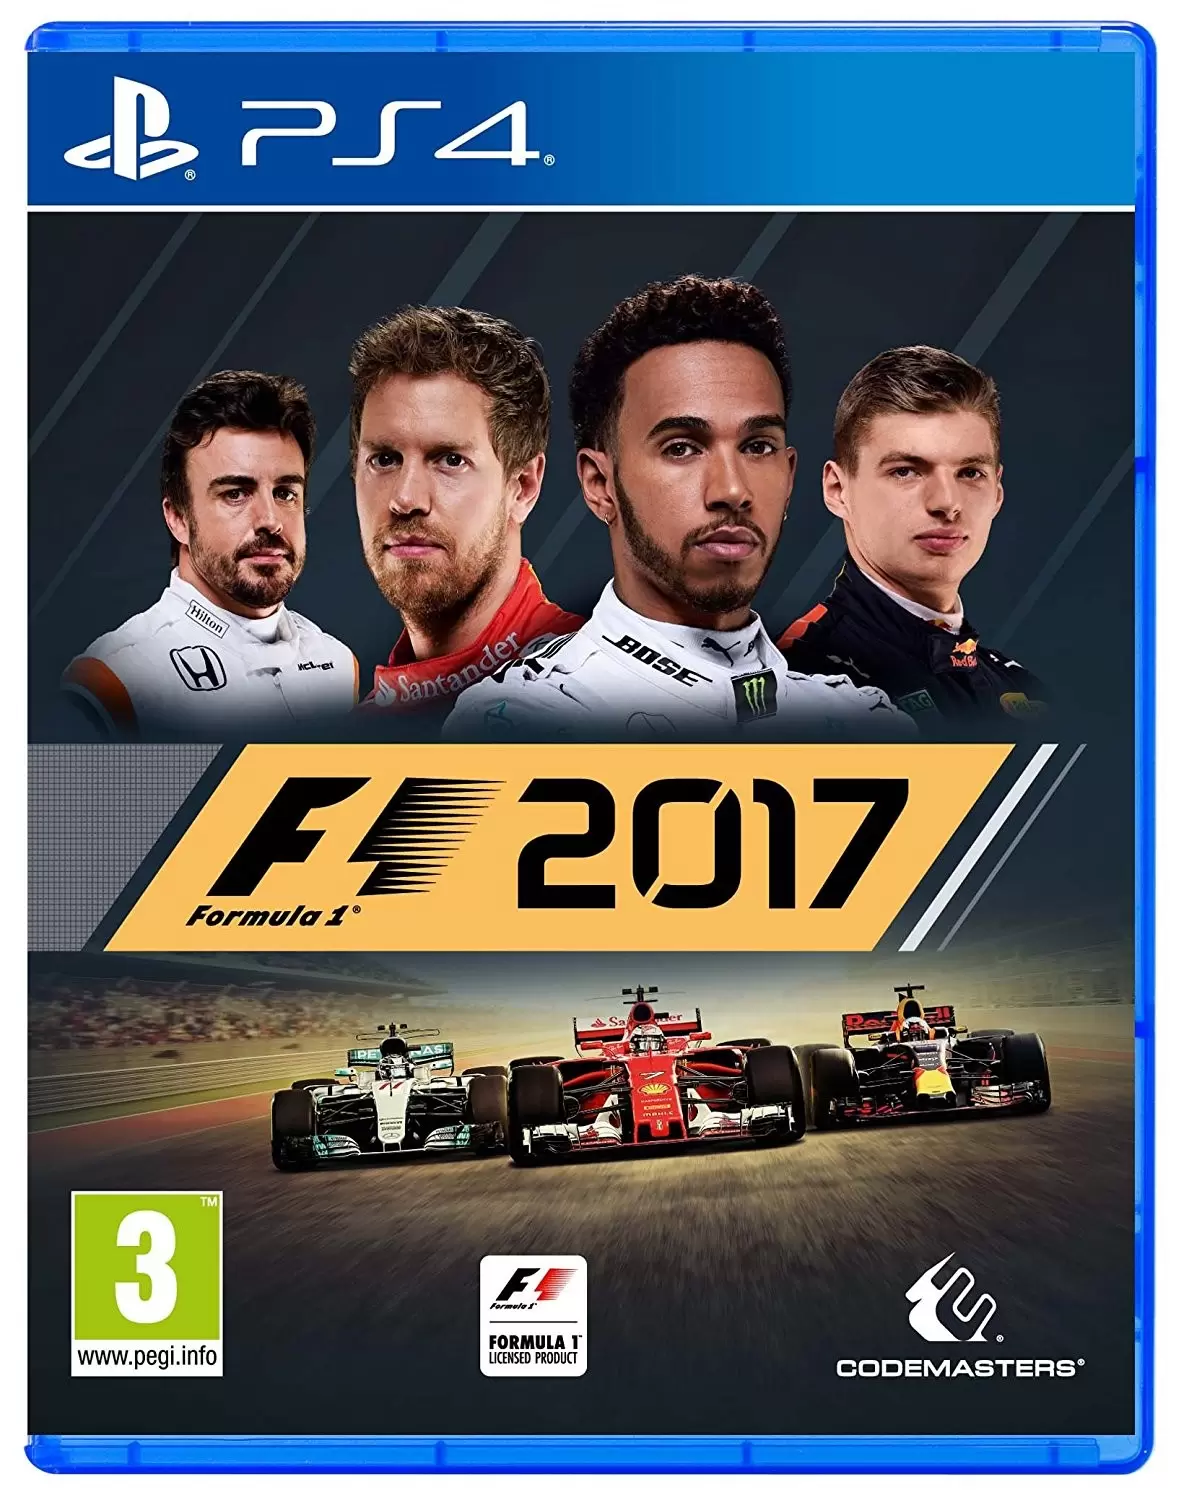 PS4 Games - F1 2017